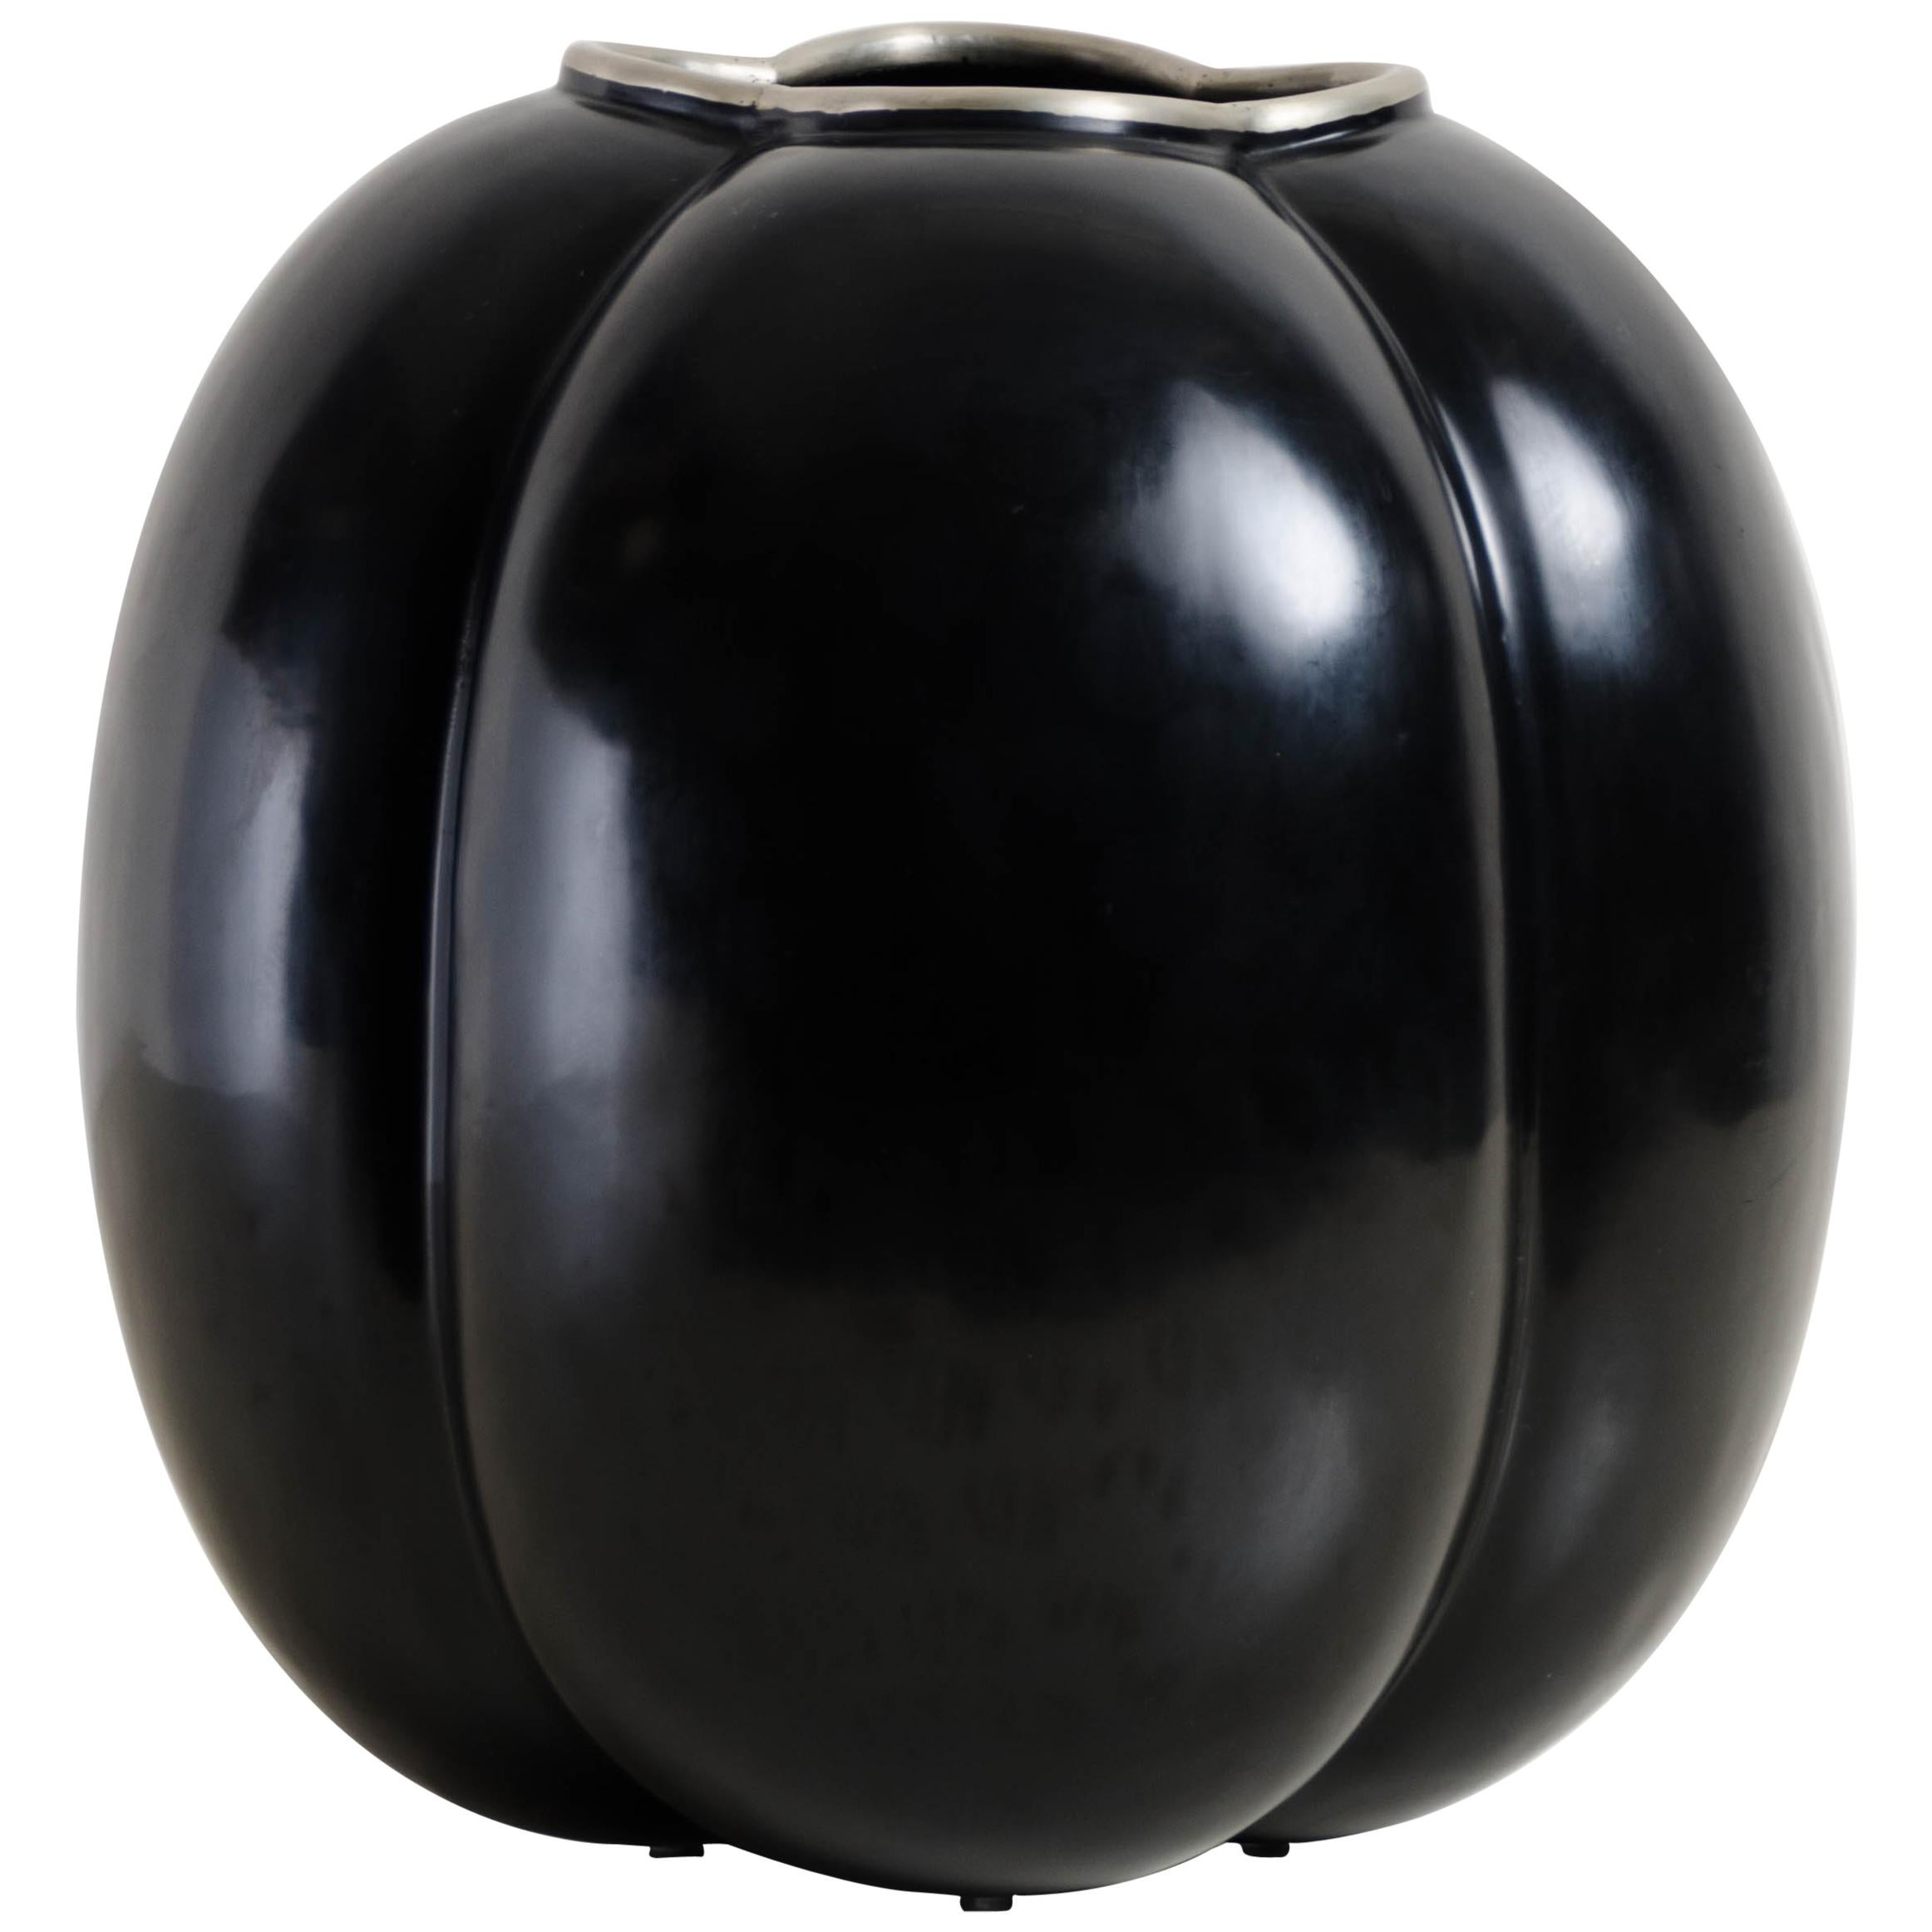 Vase High Tang de Robert Kuo, laque noire, fait à la main, édition limitée